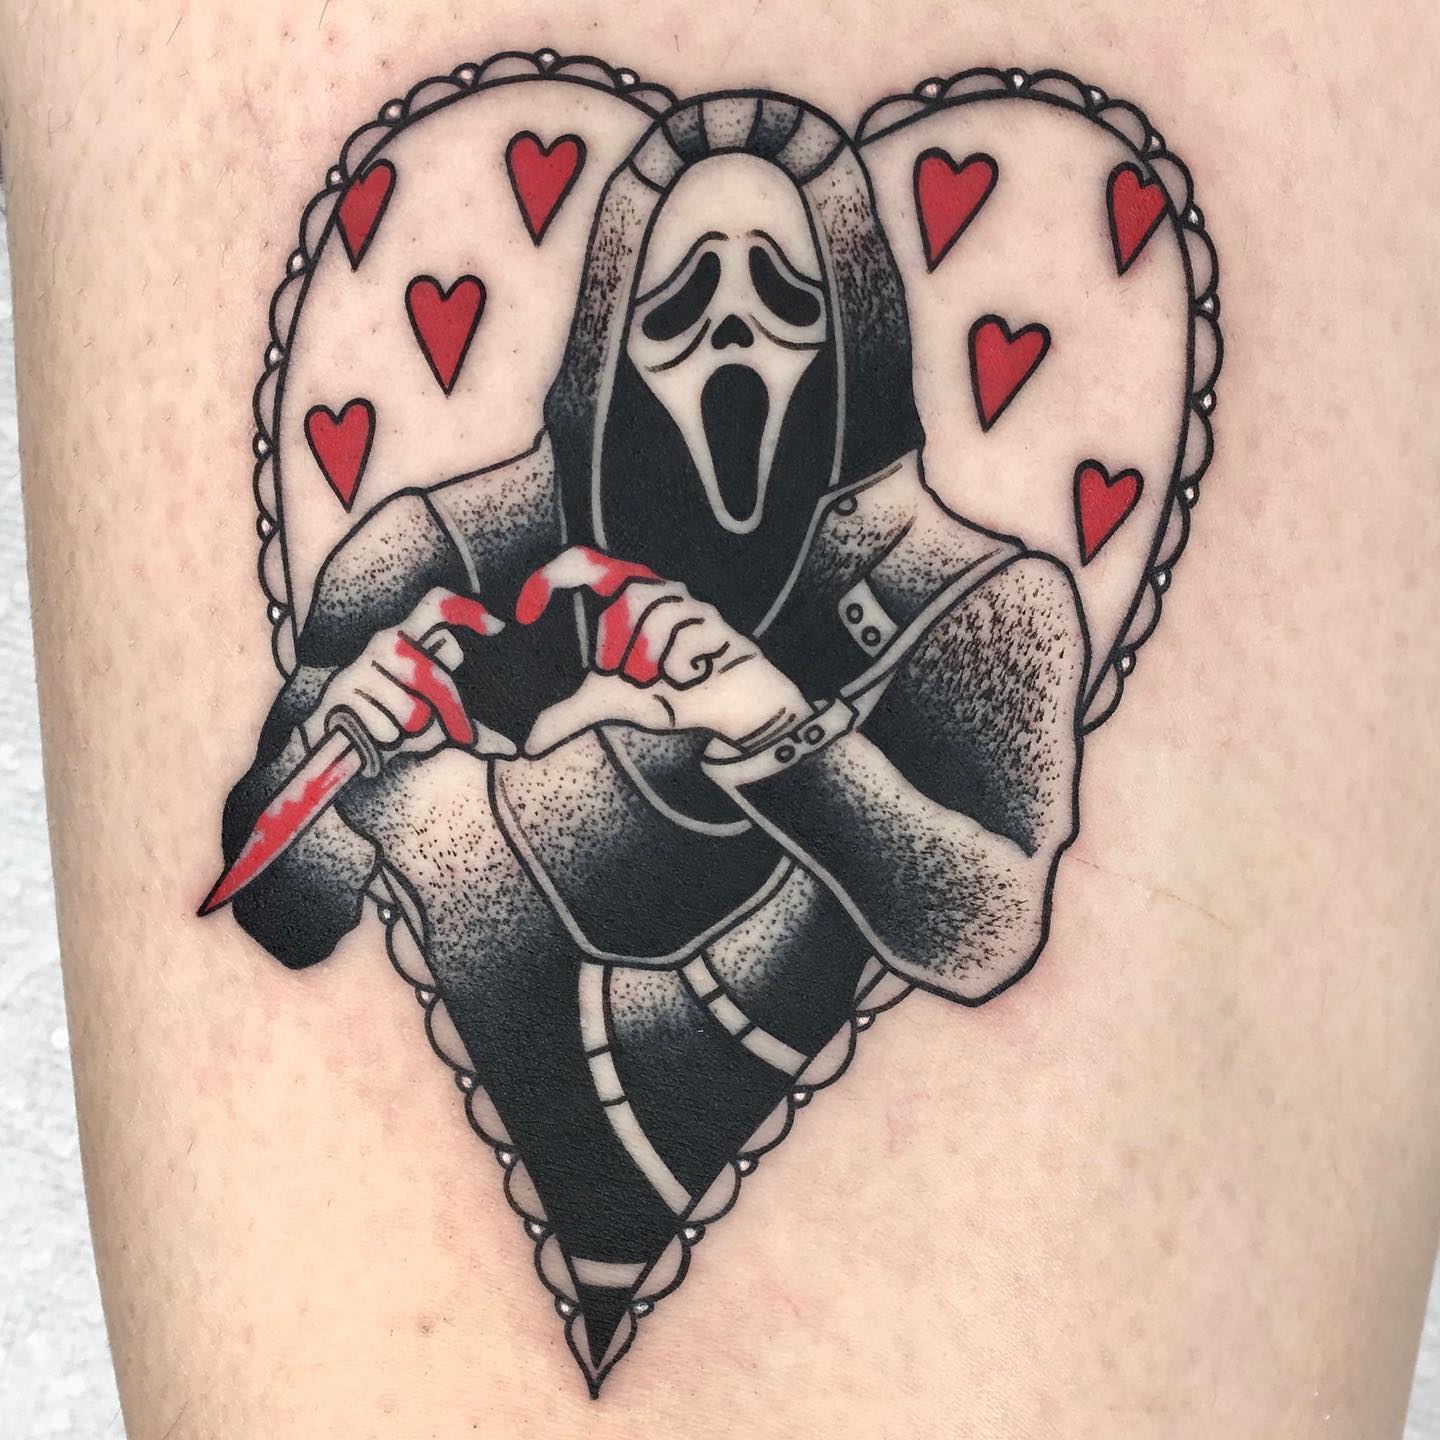 Fantasma y tatuaje de corazones